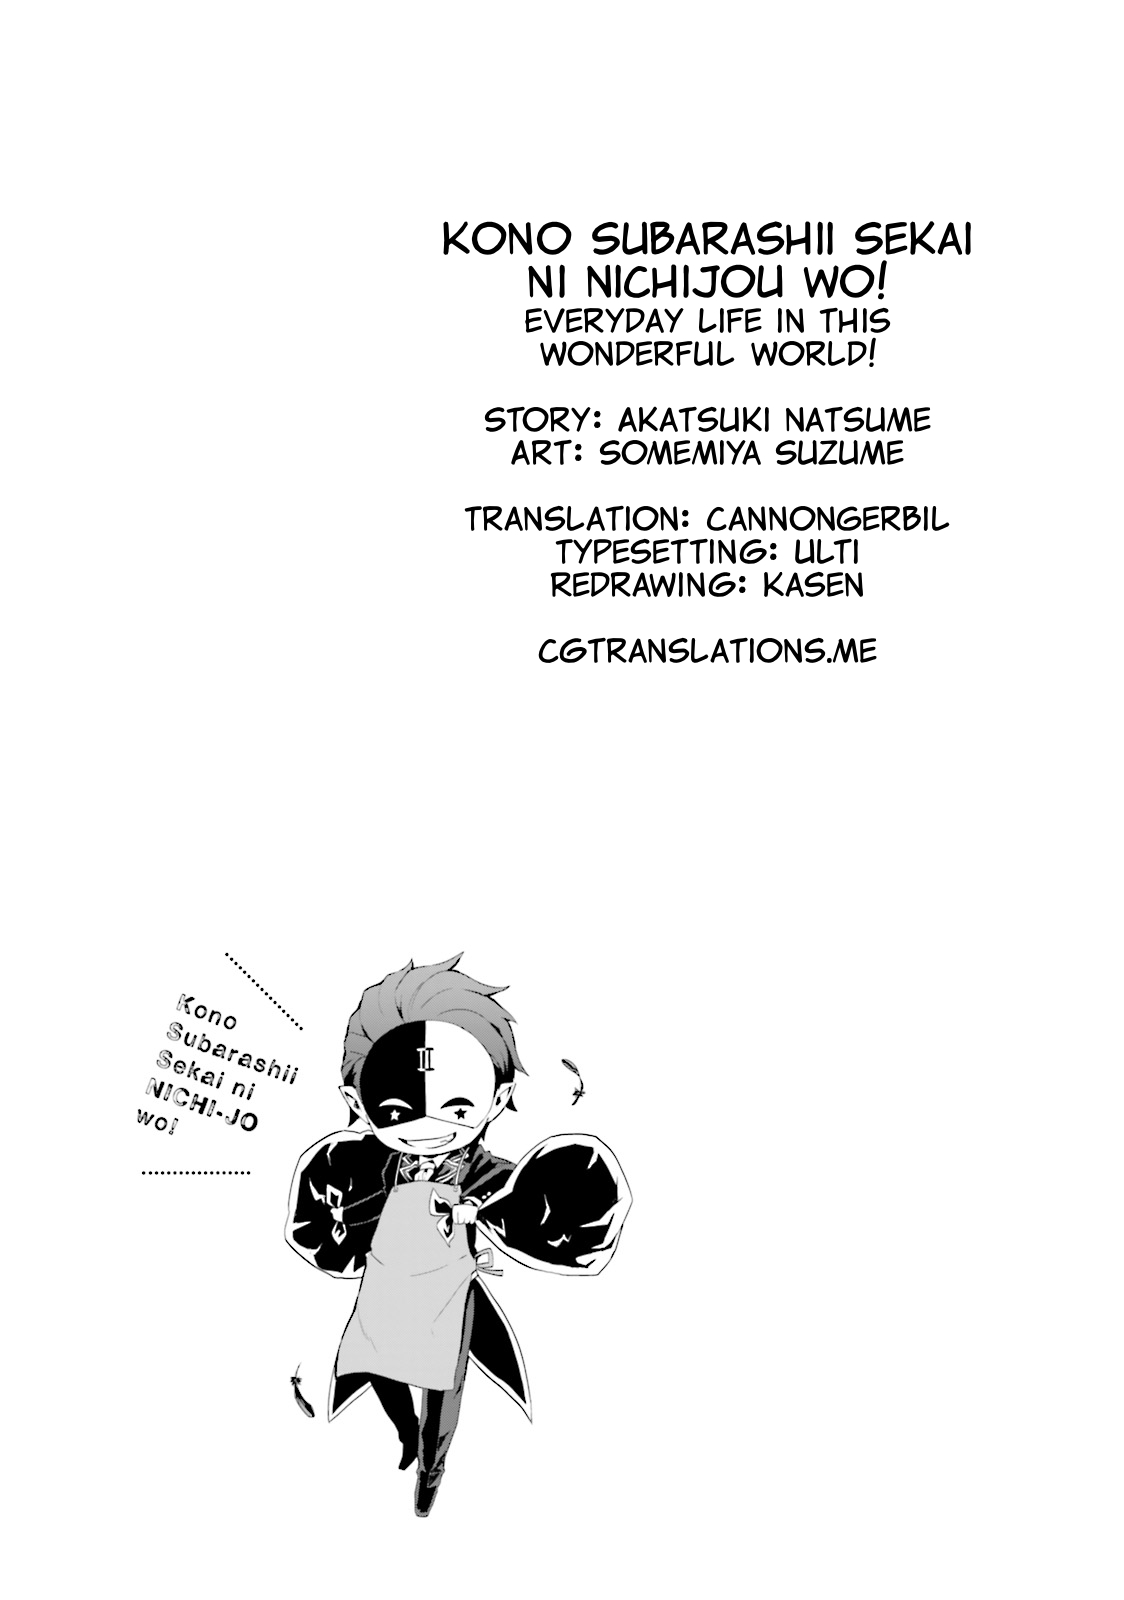 Kono Subarashii Sekai ni Nichijou wo! Vol. 2 Ch. 19 A Vacation in This Everyday Life!